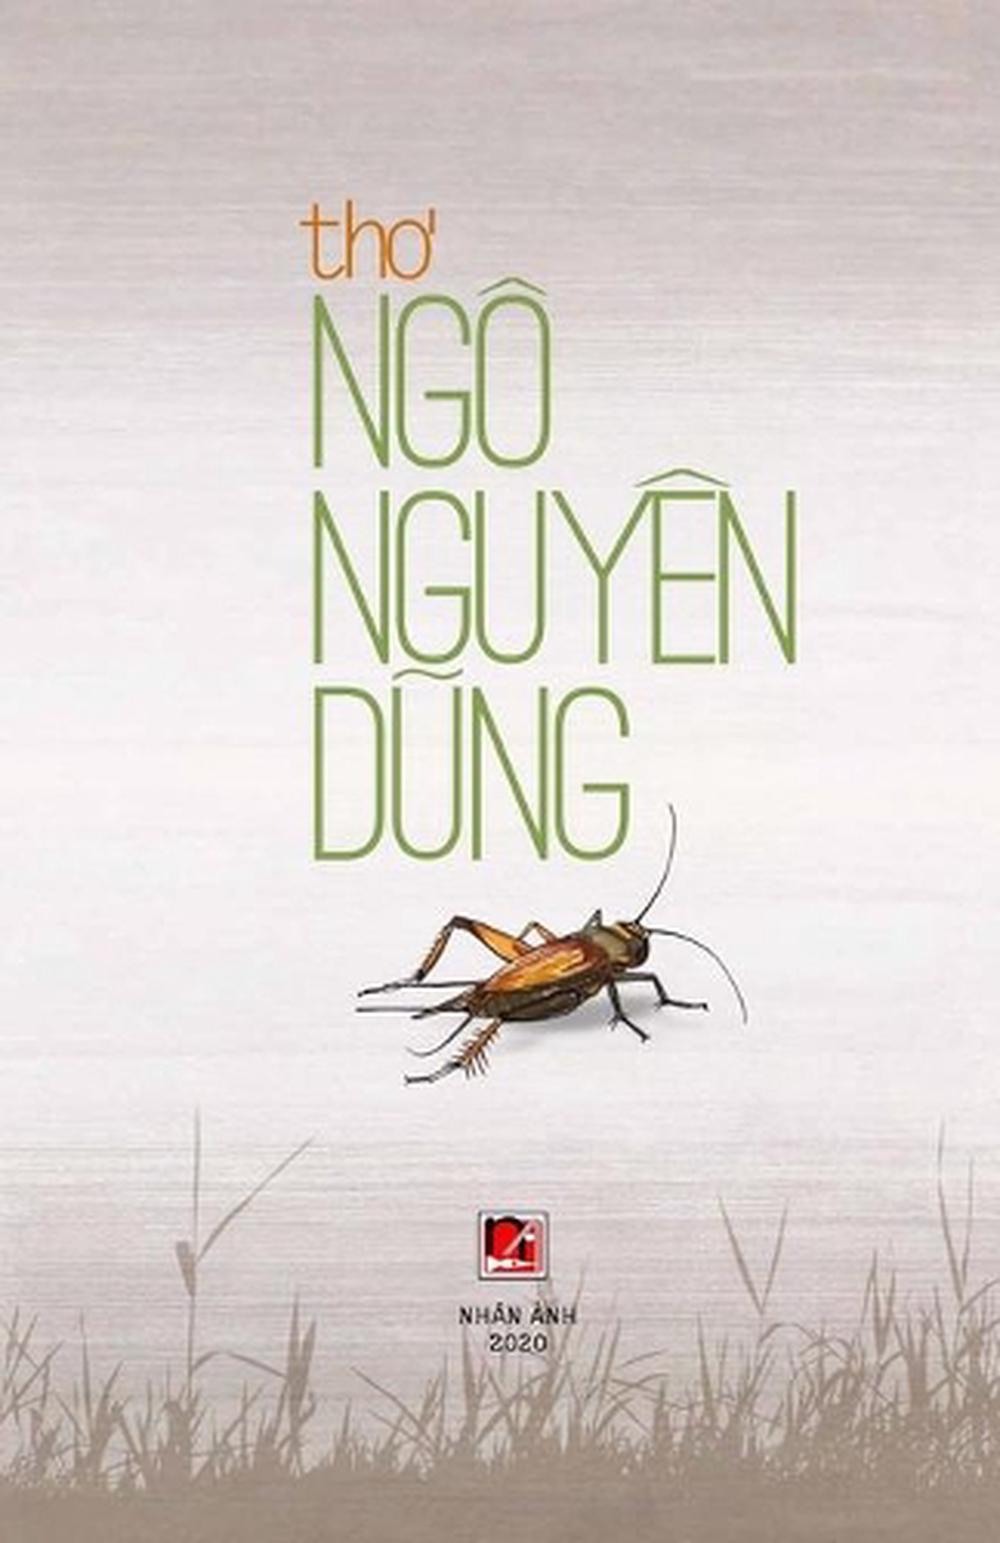 Tho Ngo Nguyen Dung by Ngo Nguyen Dung Ngo (Vietnamese) Paperback Book ...